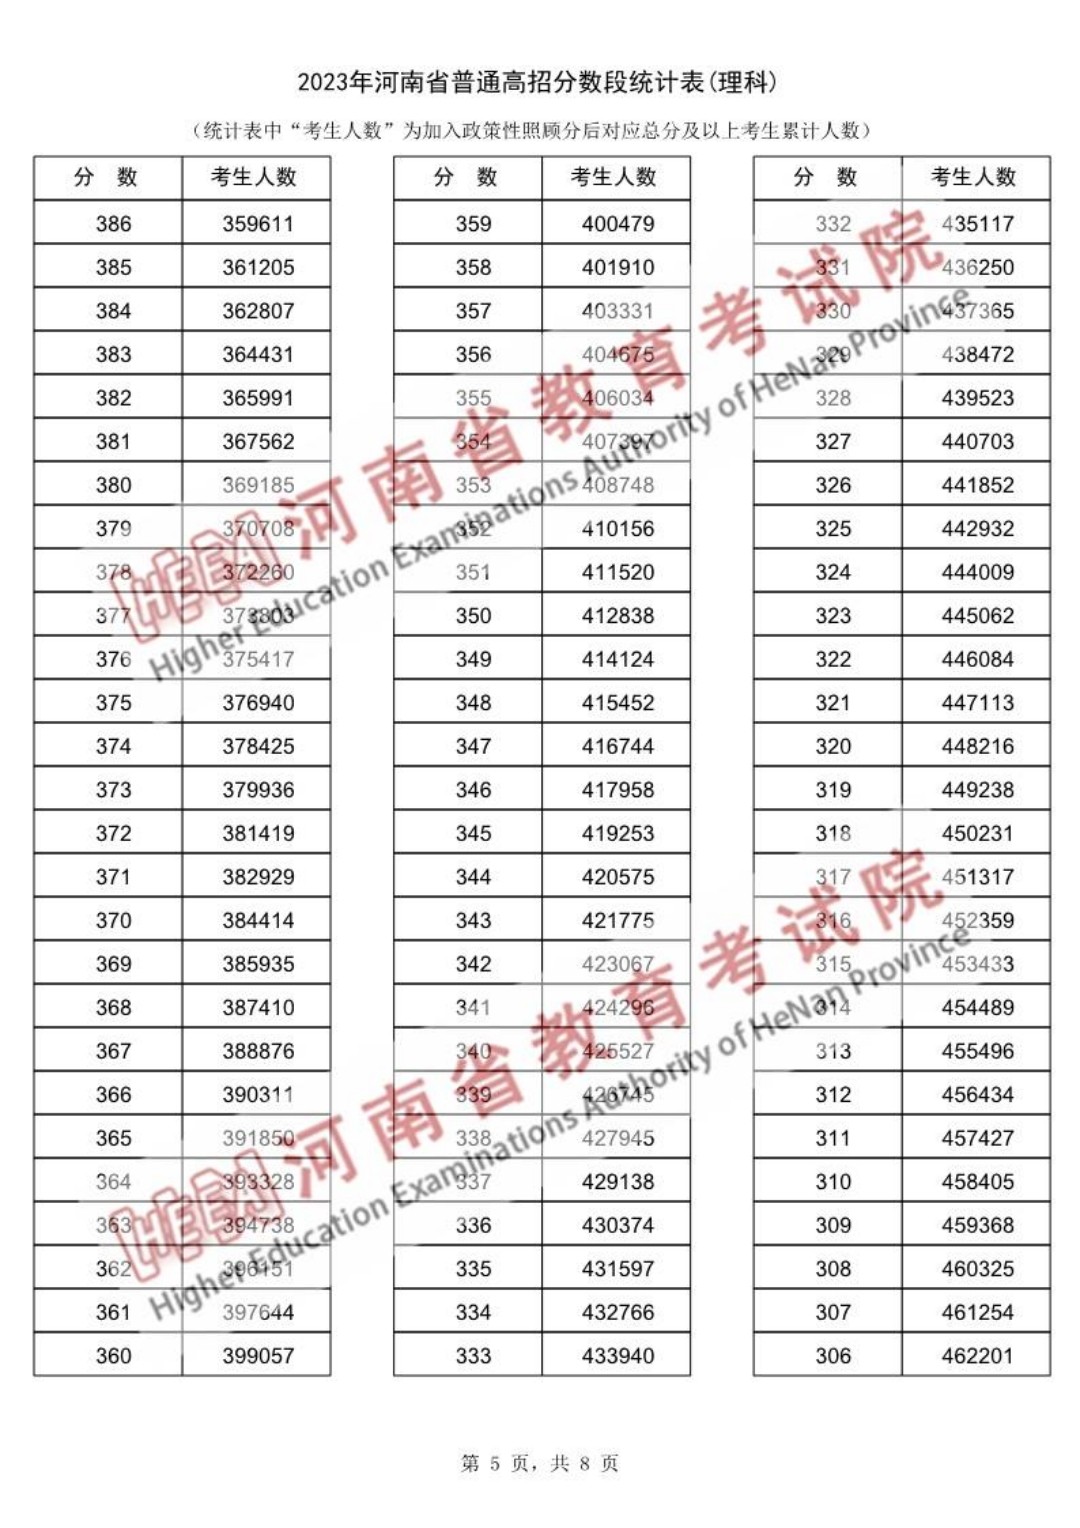 河南省2023年高考分数段统计表